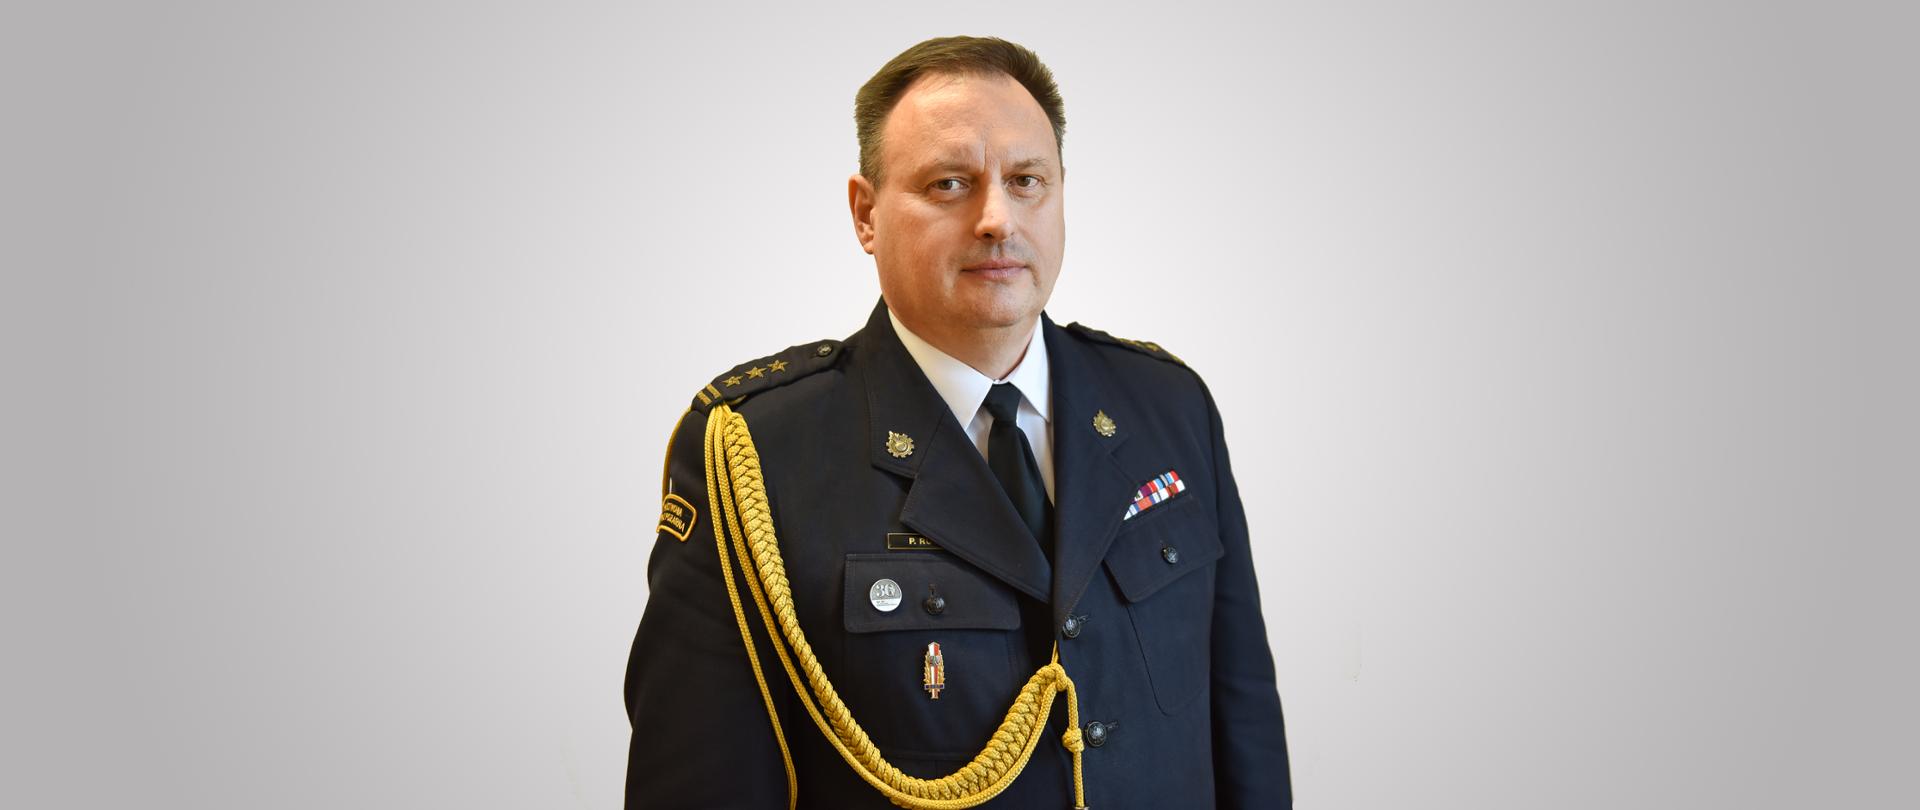 zdjęcie przedstawia starszego brygadiera Piotra Rudeckiego Łódzkiego Komendanta Wojewódzki PSP w mundurze wyjściowym. Zdjęcie portretowe